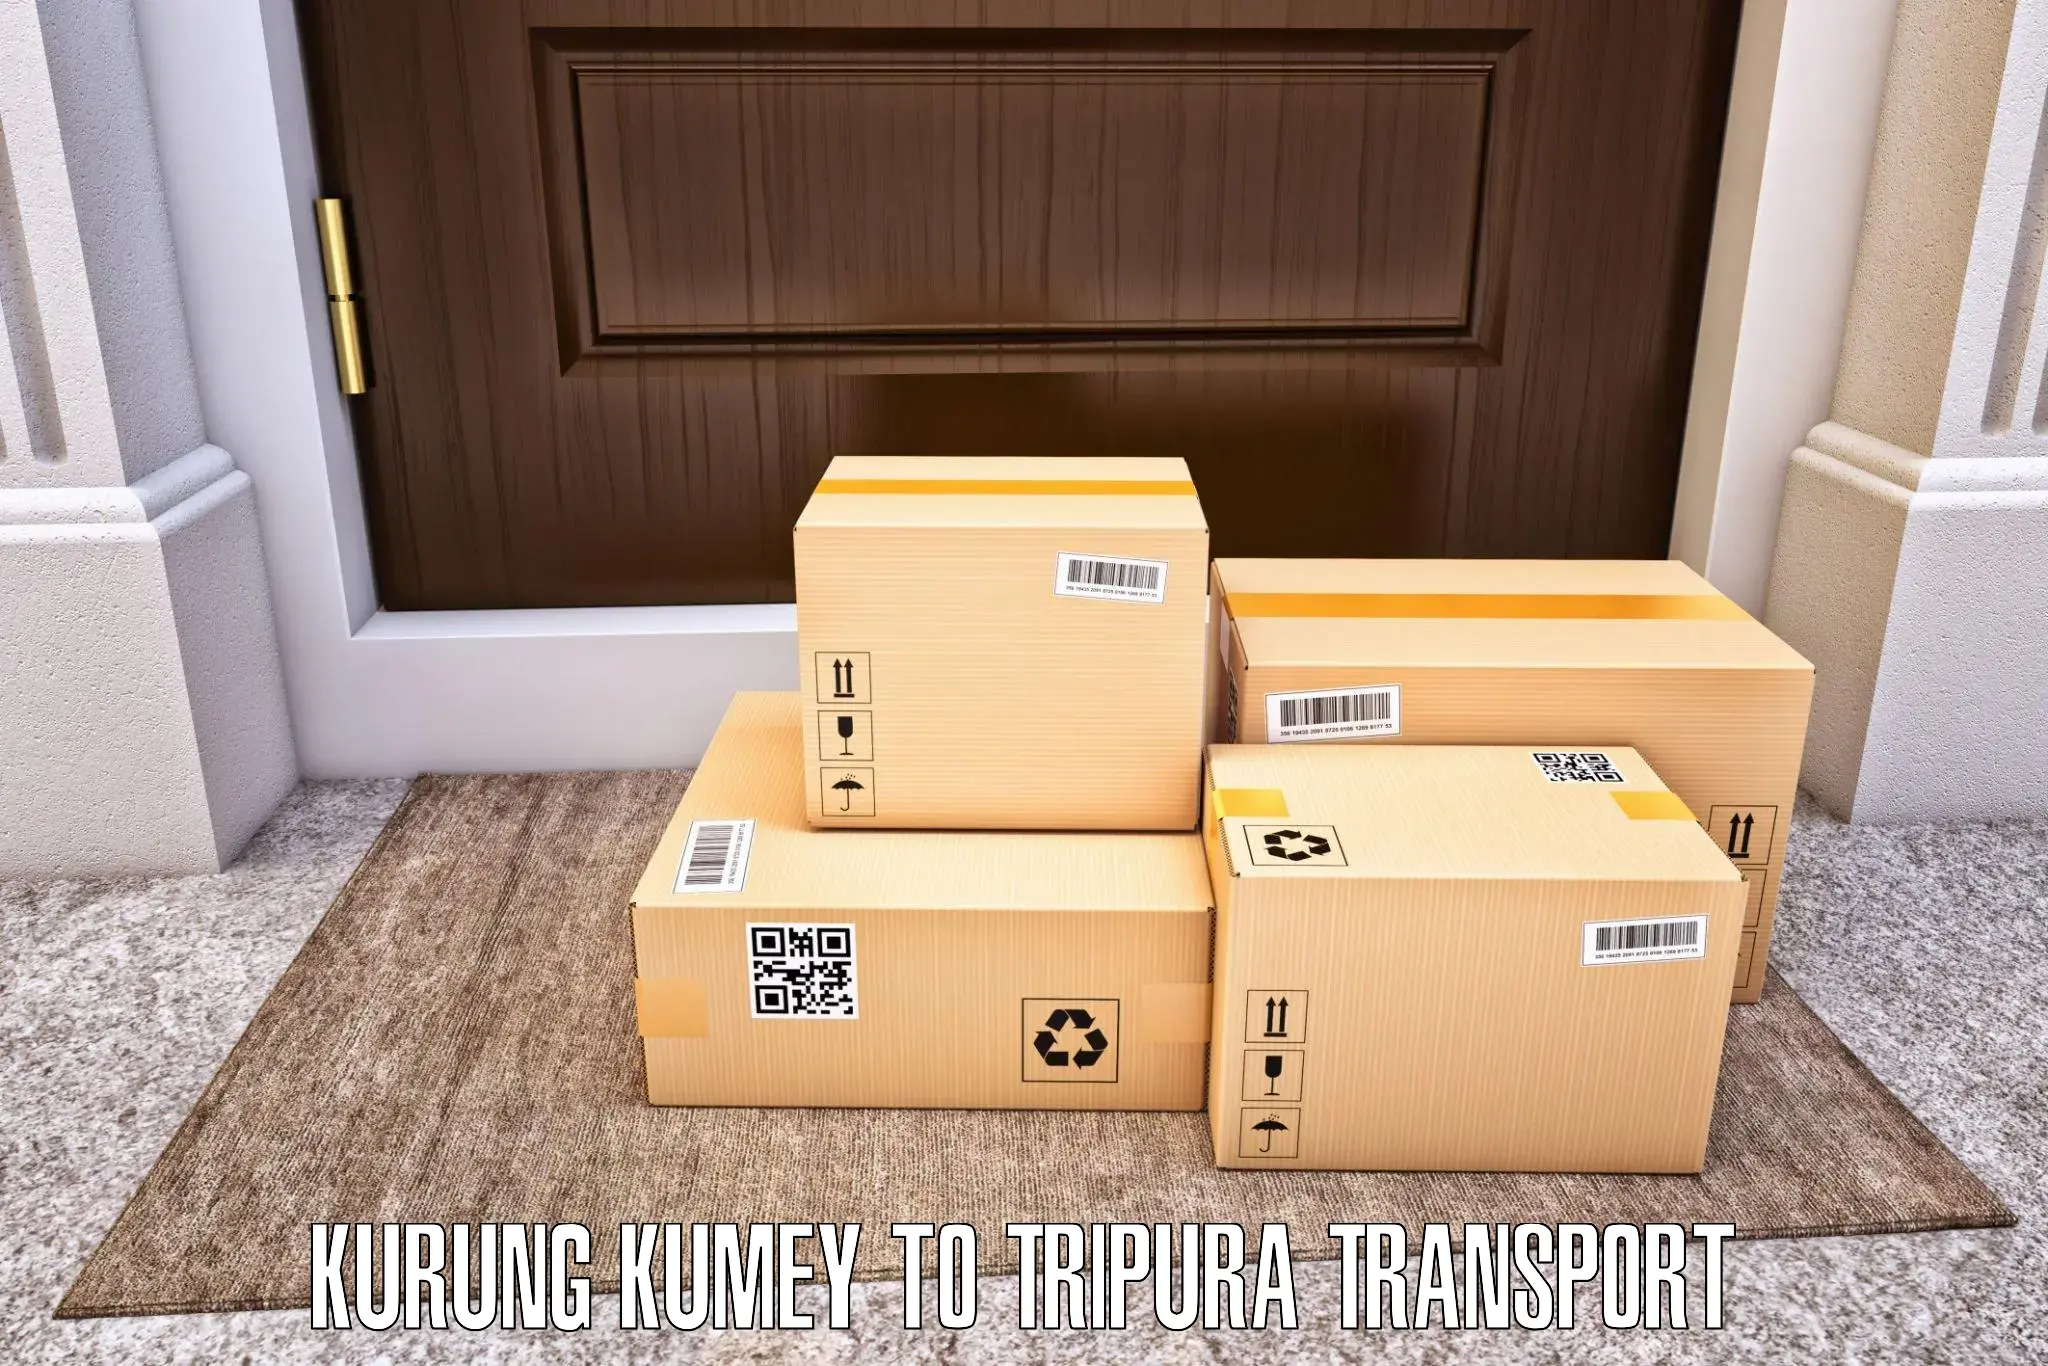 Sending bike to another city in Kurung Kumey to Teliamura